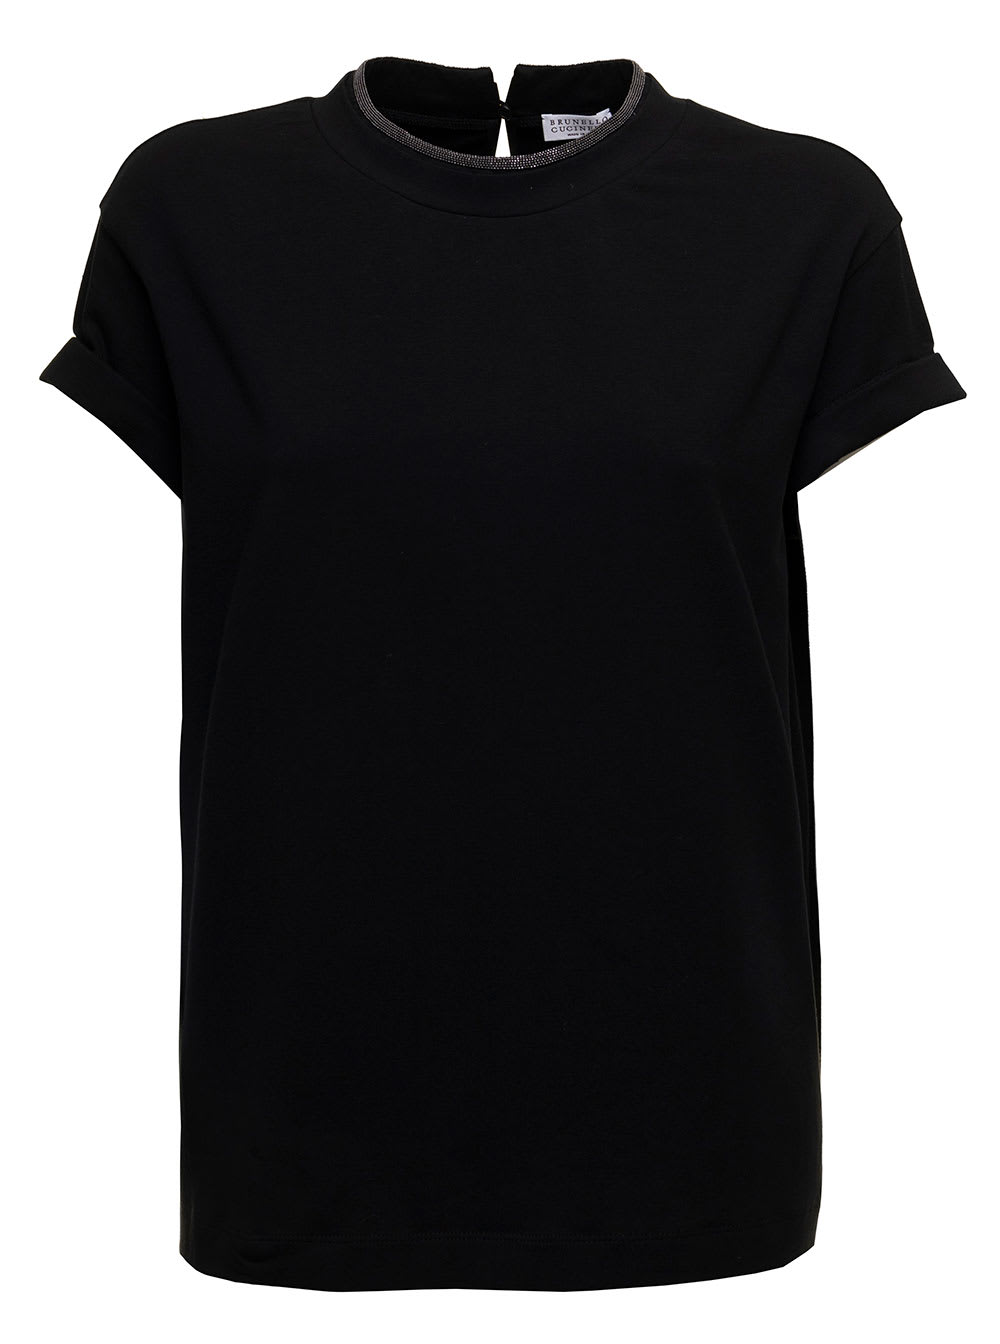 Brunello Cucinelli Womans Black Cotton T-shirt With Monile Crew Neck